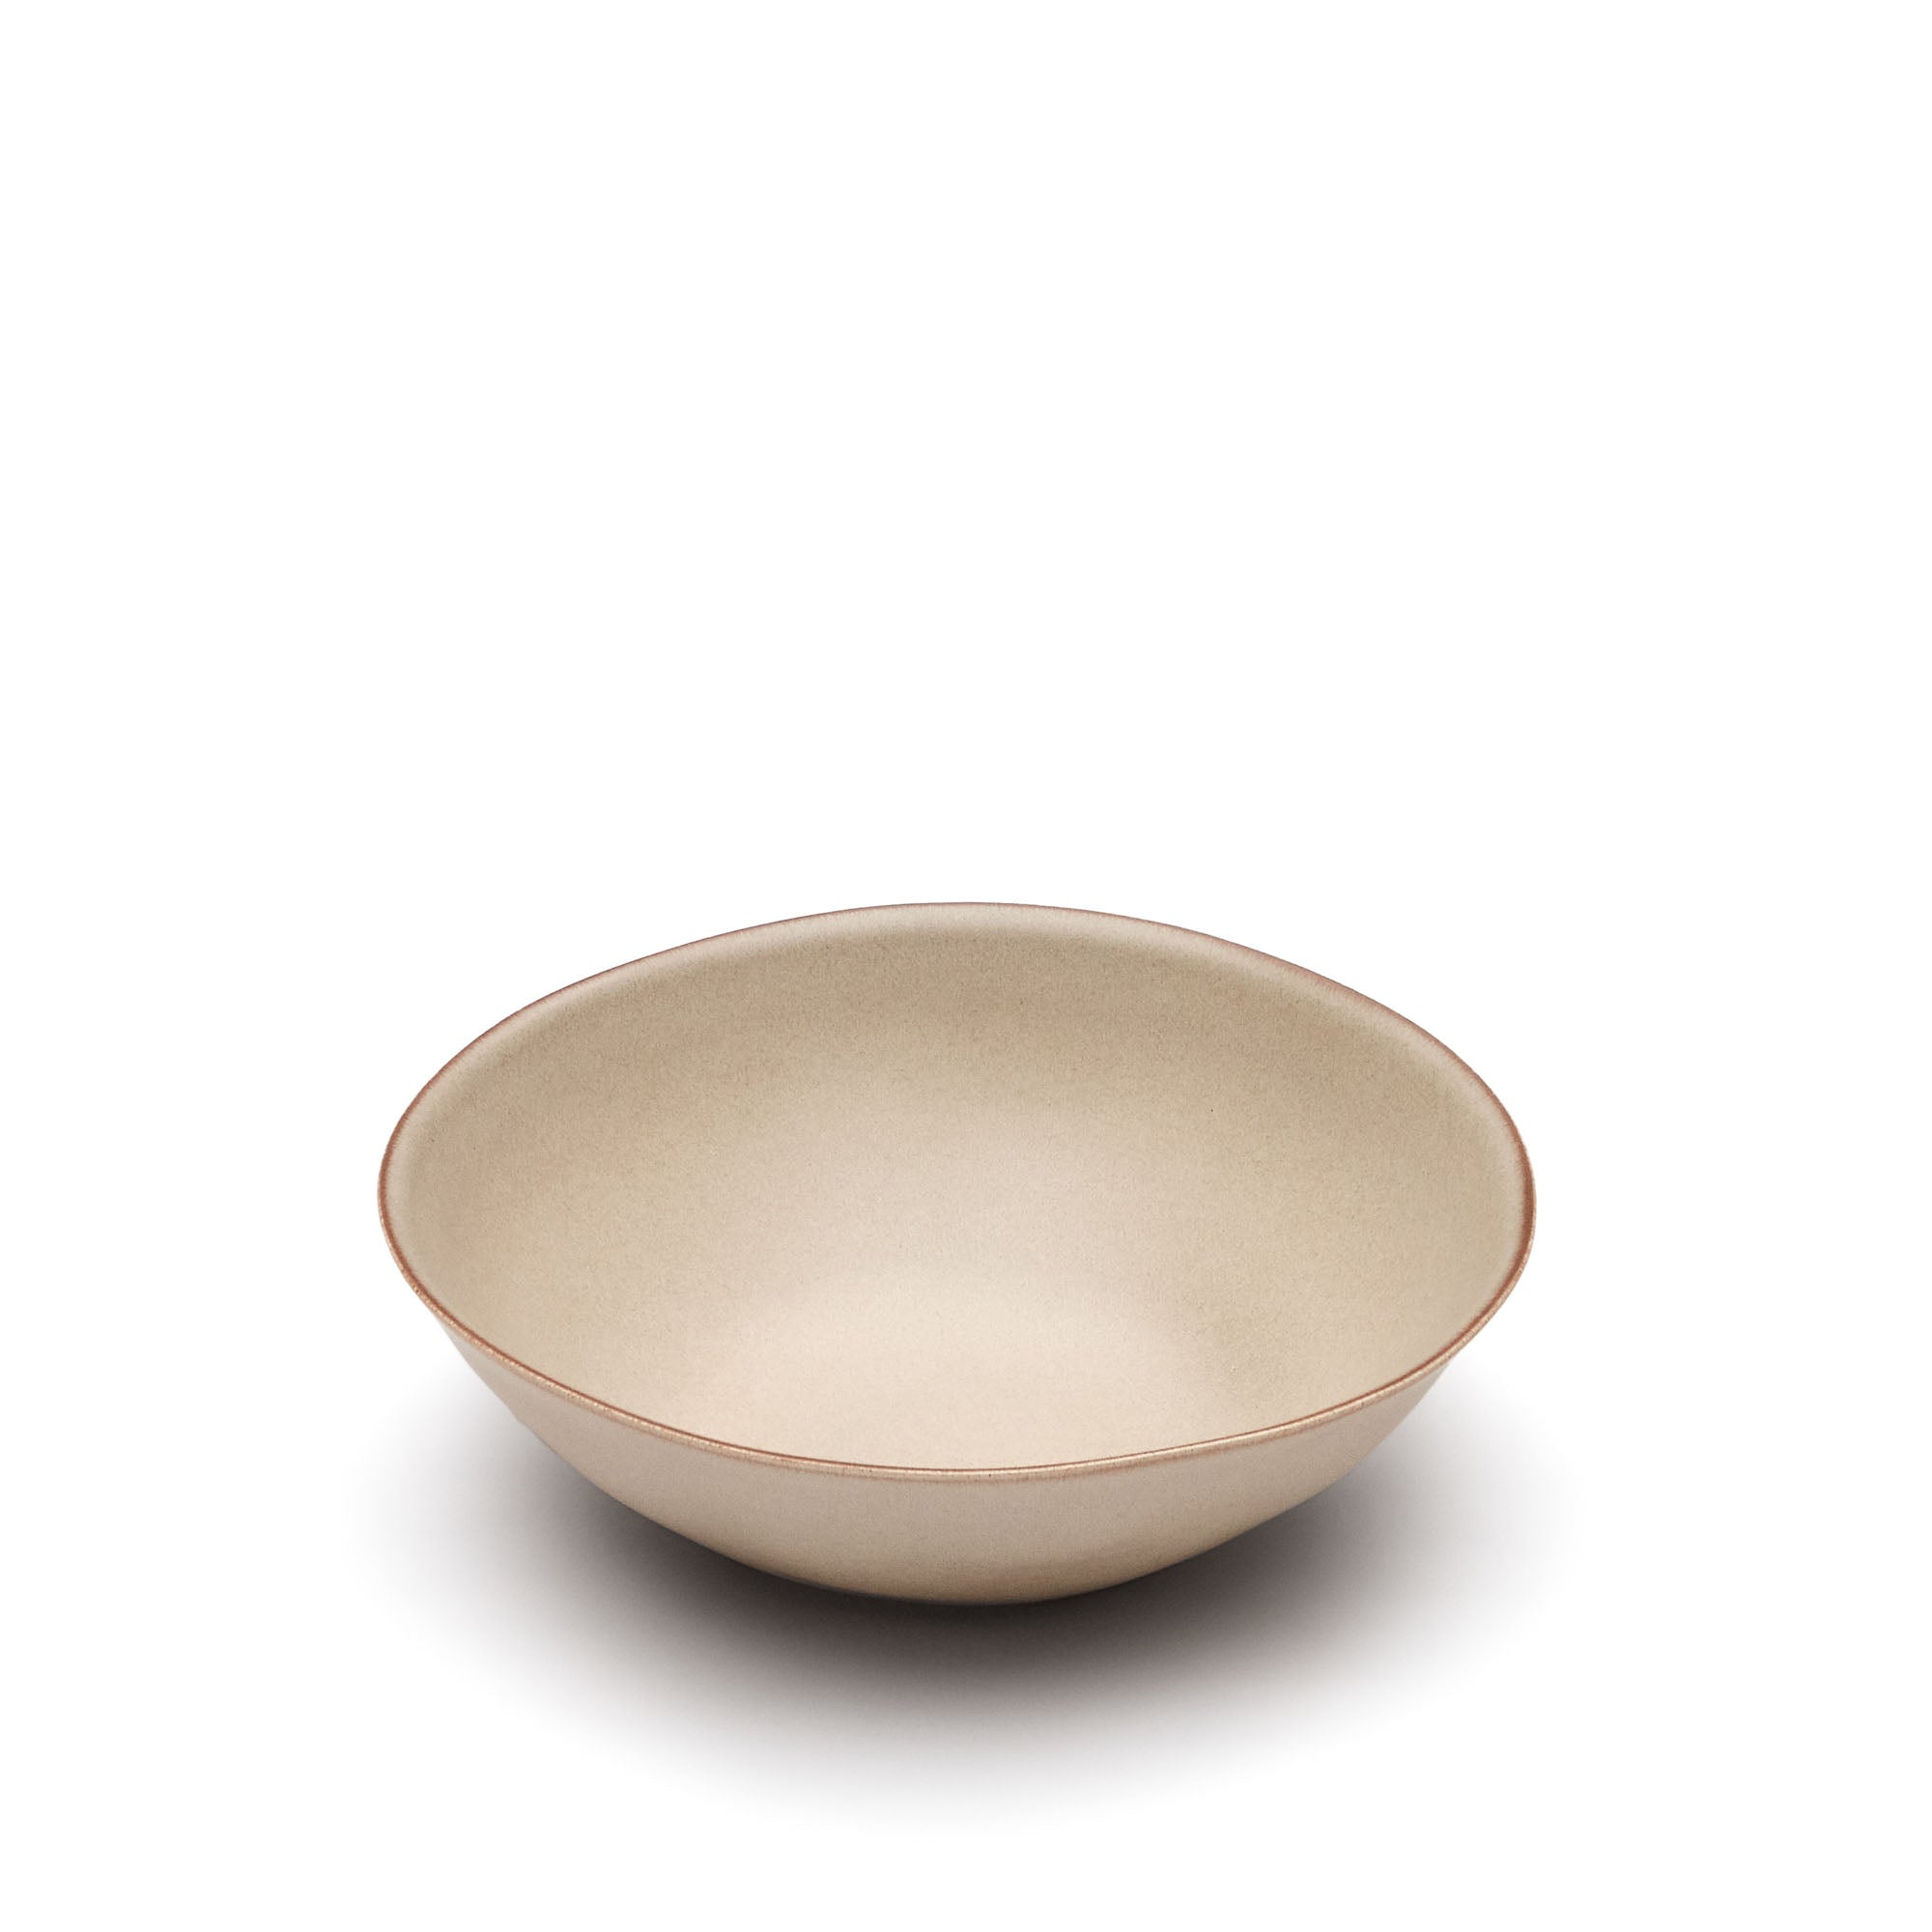 Banyoles large ceramic bowl in brown